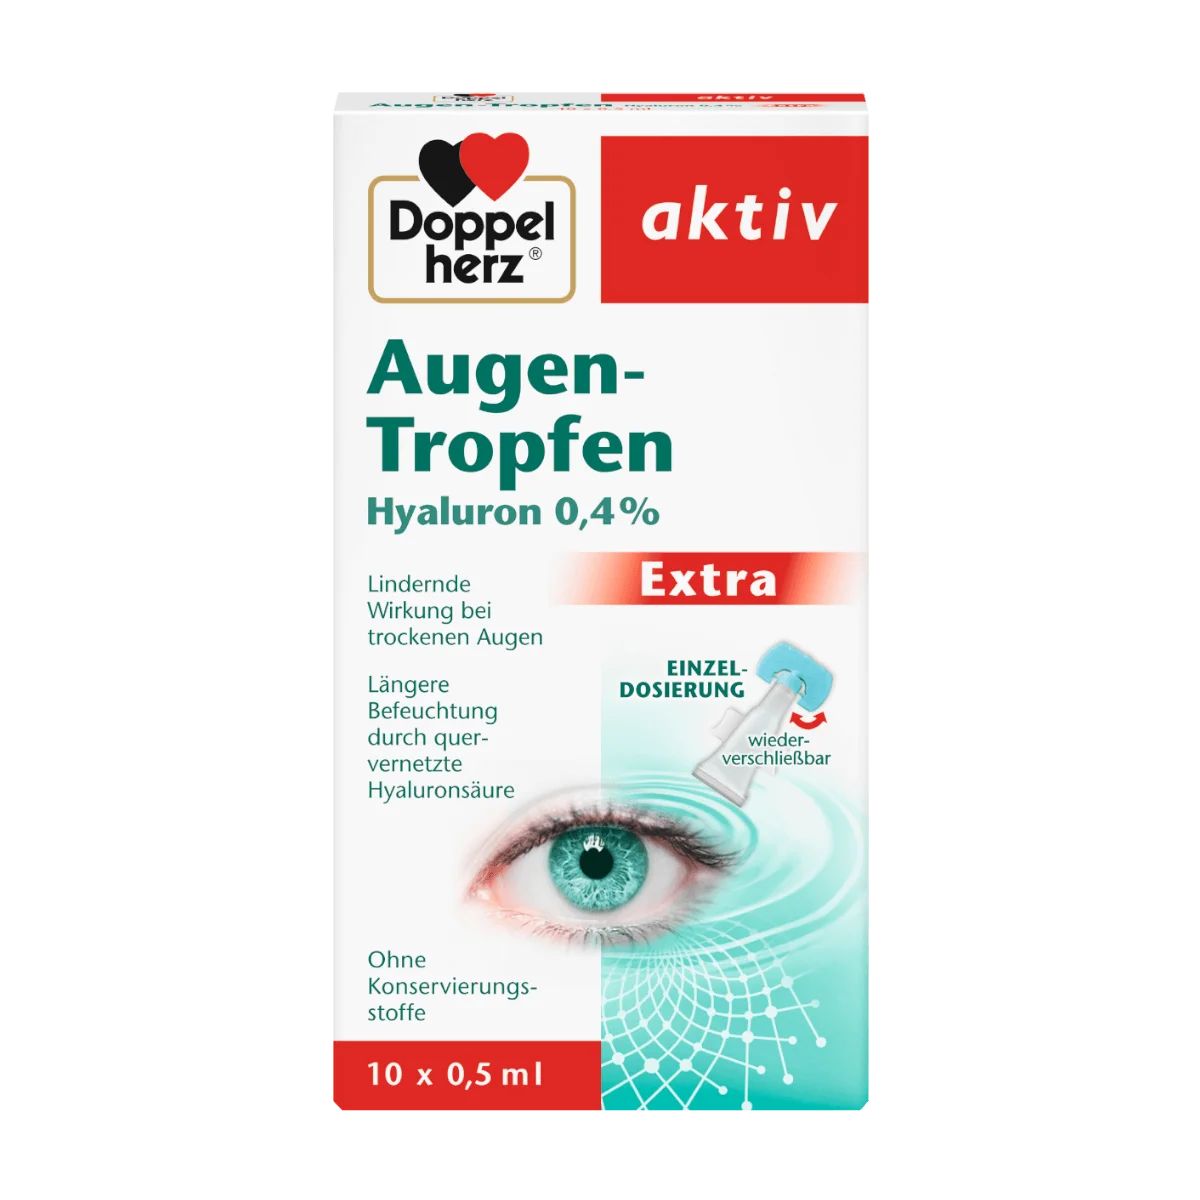 Doppelherz Augen-Tropfen Extra Hyaluron 0,4% 10 x 0,5 ml